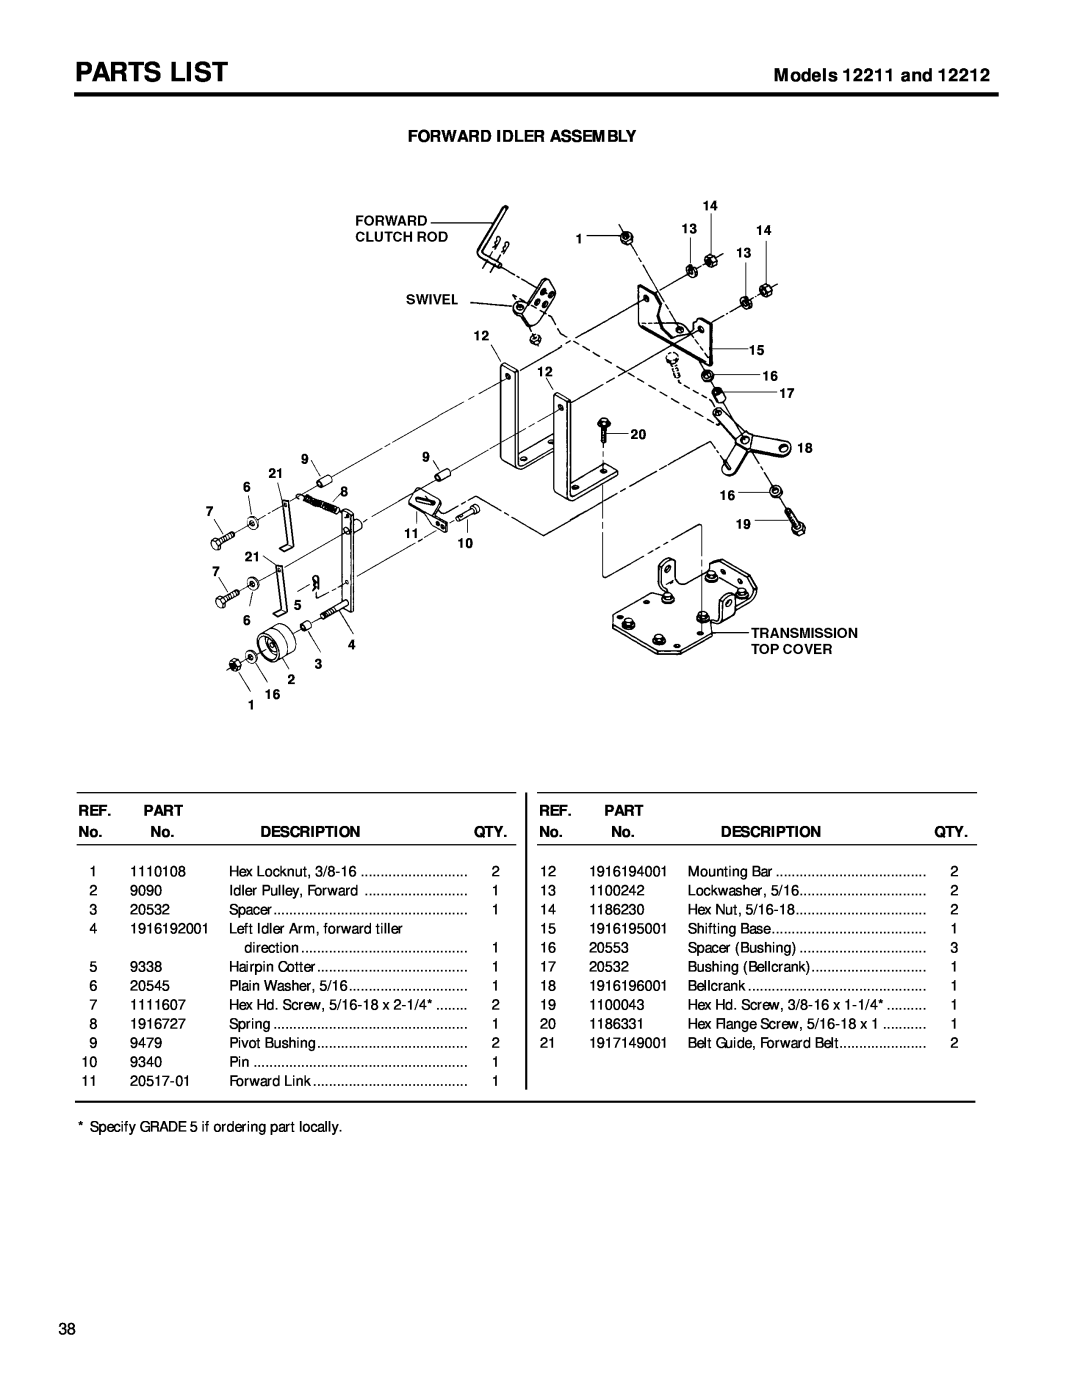 Troy-Bilt 12212 owner manual Forward Idler Assembly, Parts List, Models 12211 and, Description 